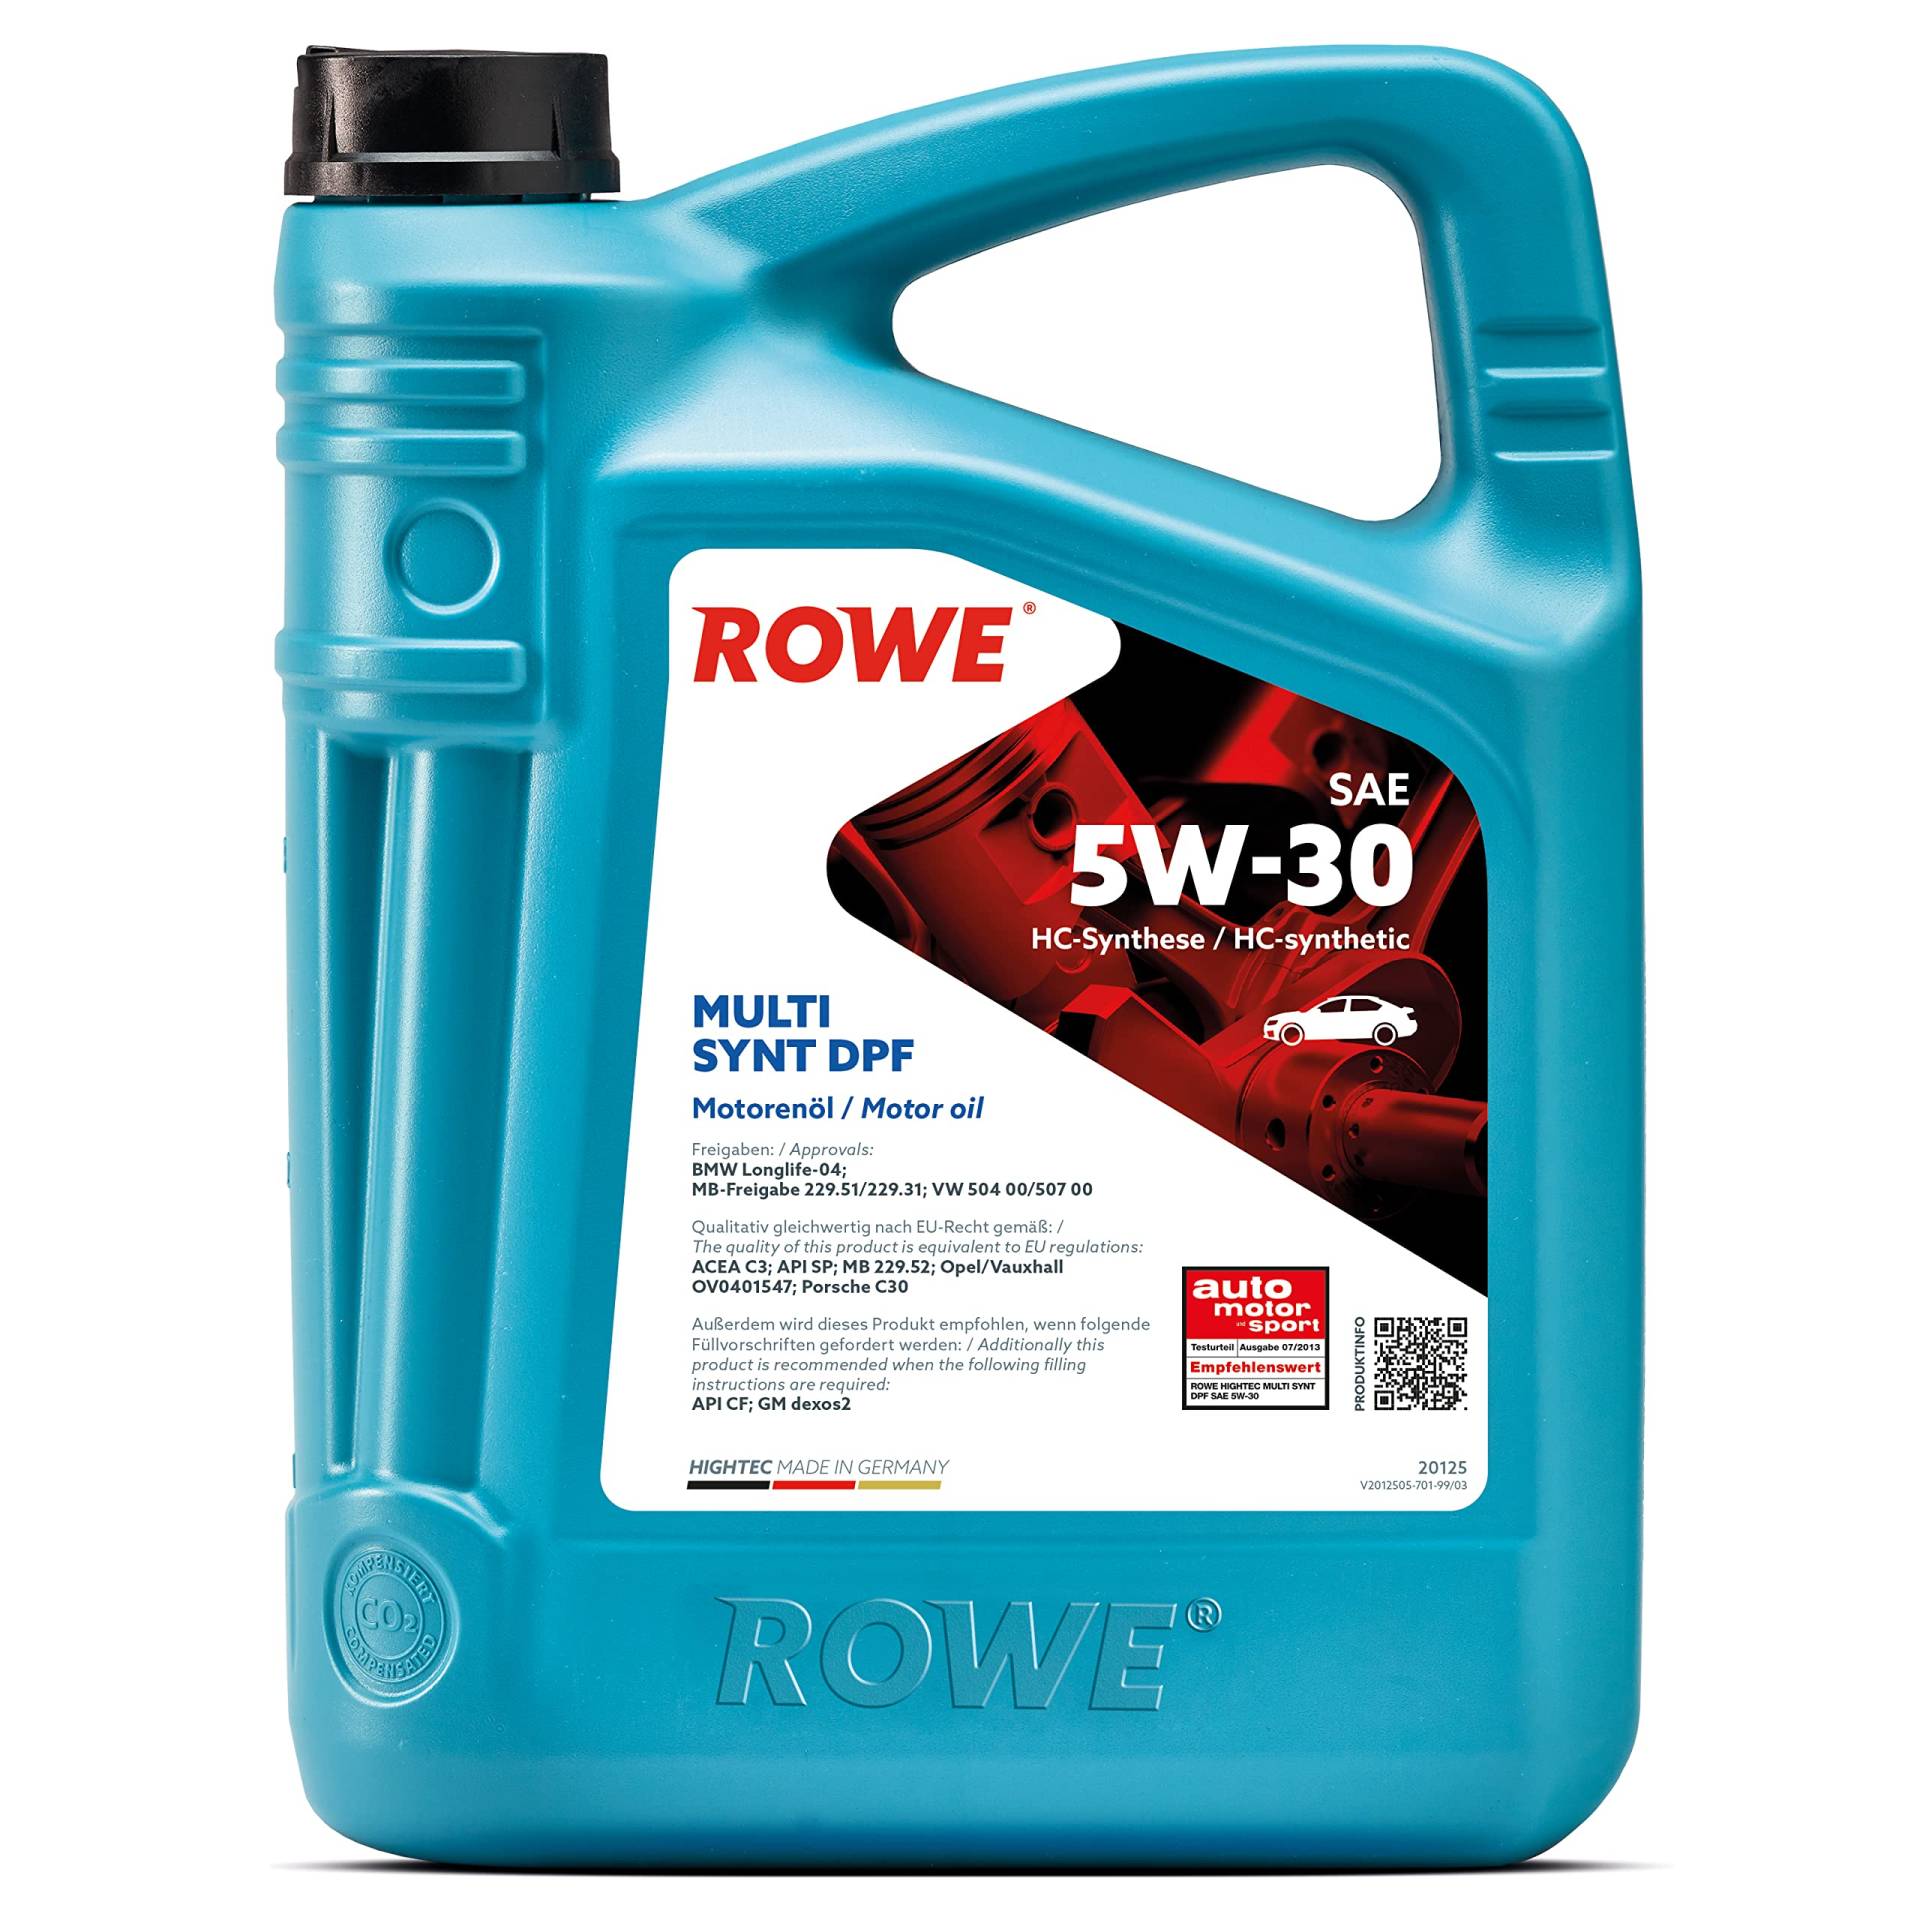 ROWE - 5 Liter HIGHTEC MULTI SYNT DPF SAE 5W-30 Motorenöl - für Diesel- und Benzinmotoren mit Turboaufladung von ROWE